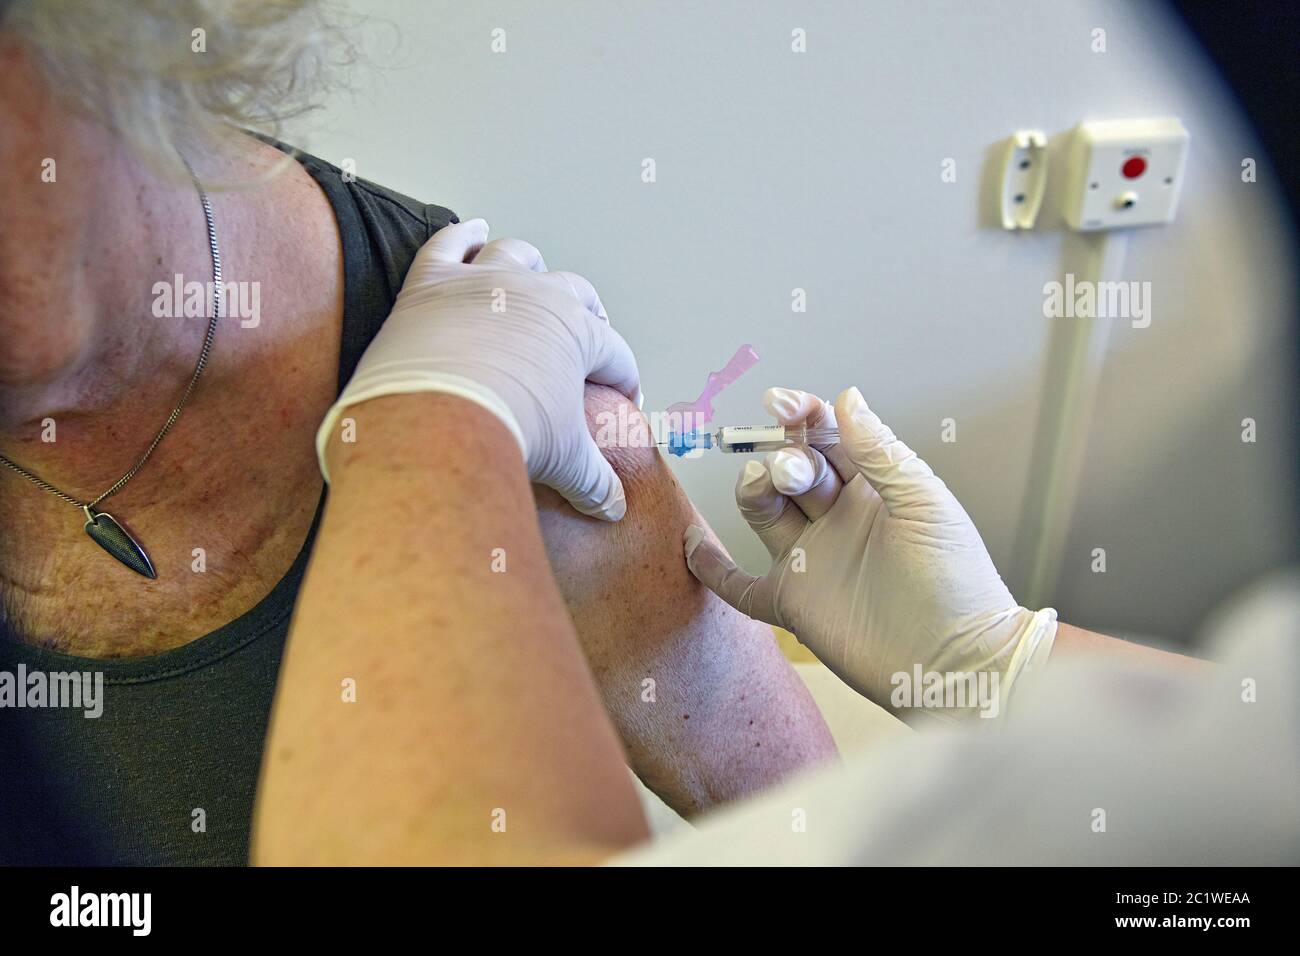 Virus flu vaccination in sweden Stock Photo